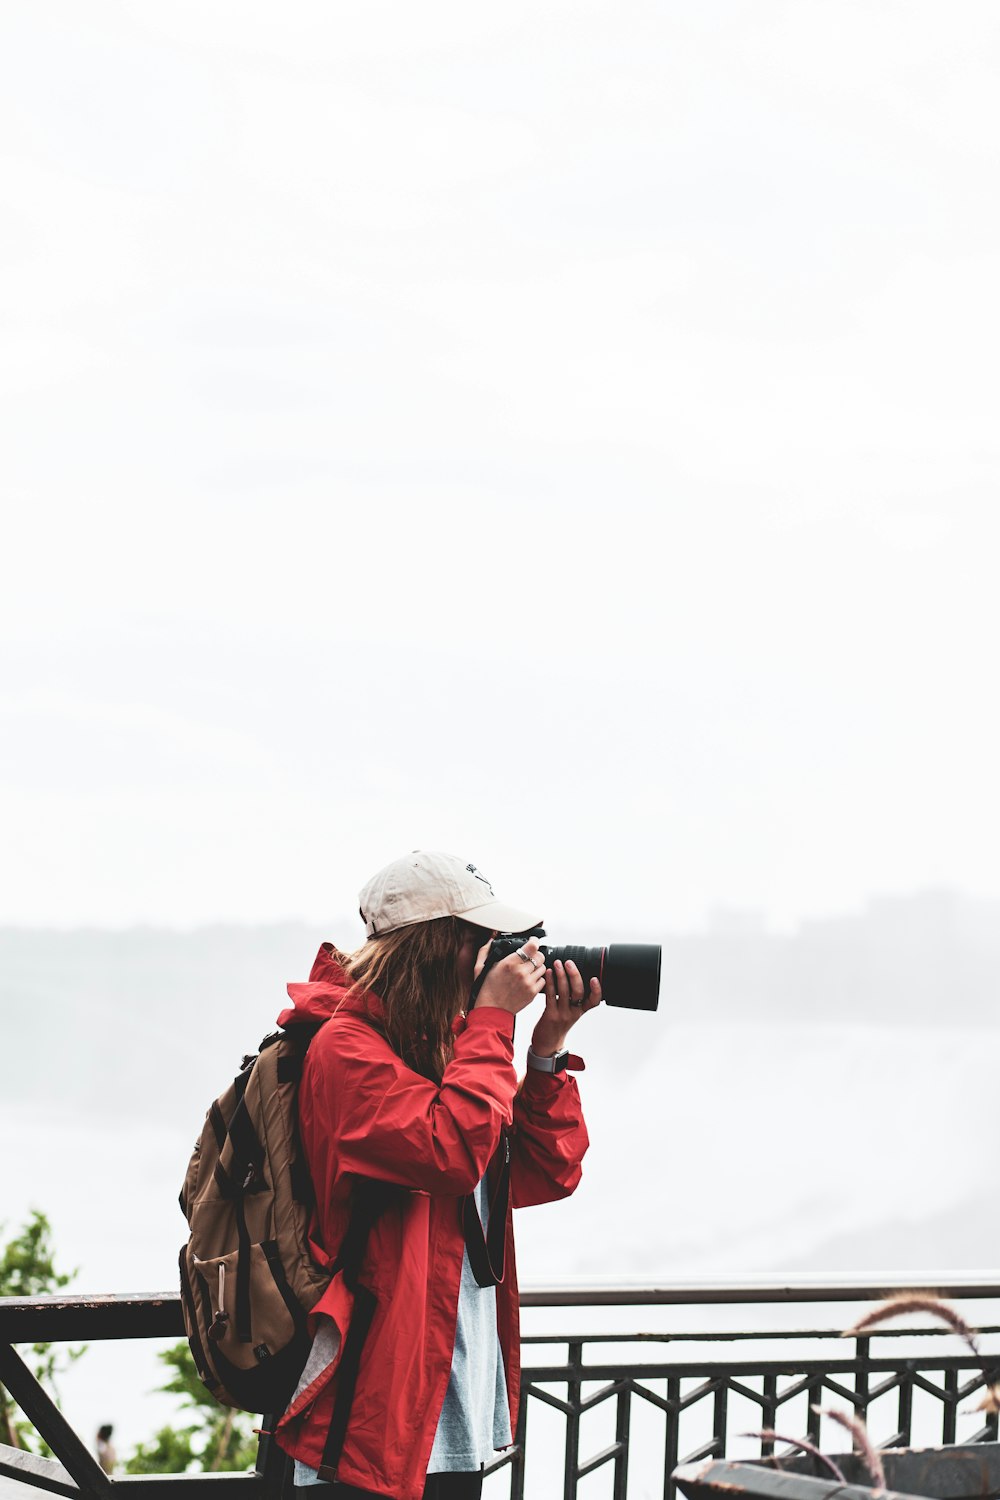 person holding black DSLR camera taking camera shot during daytime